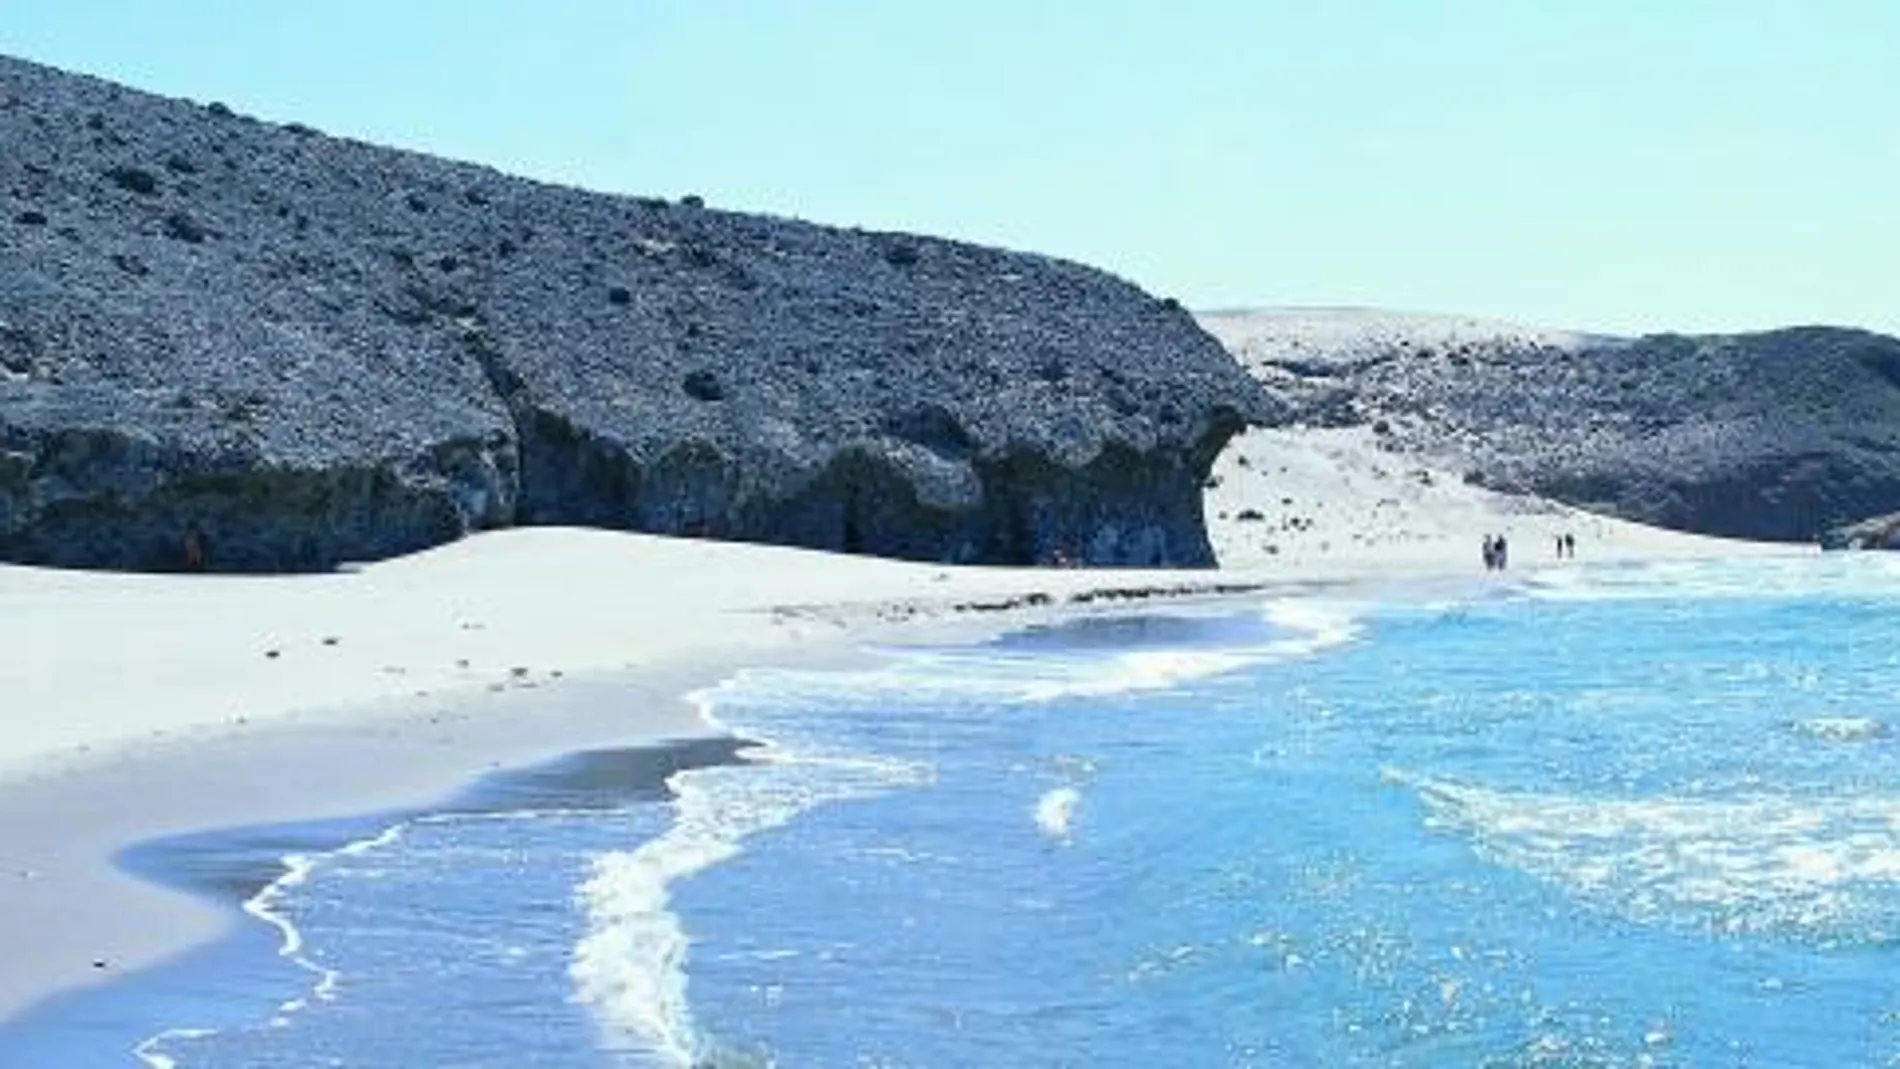 Ubicada en el municipio de Níjar, esta playa sirvió como localización de la película Indiana Jones y la última cruzada